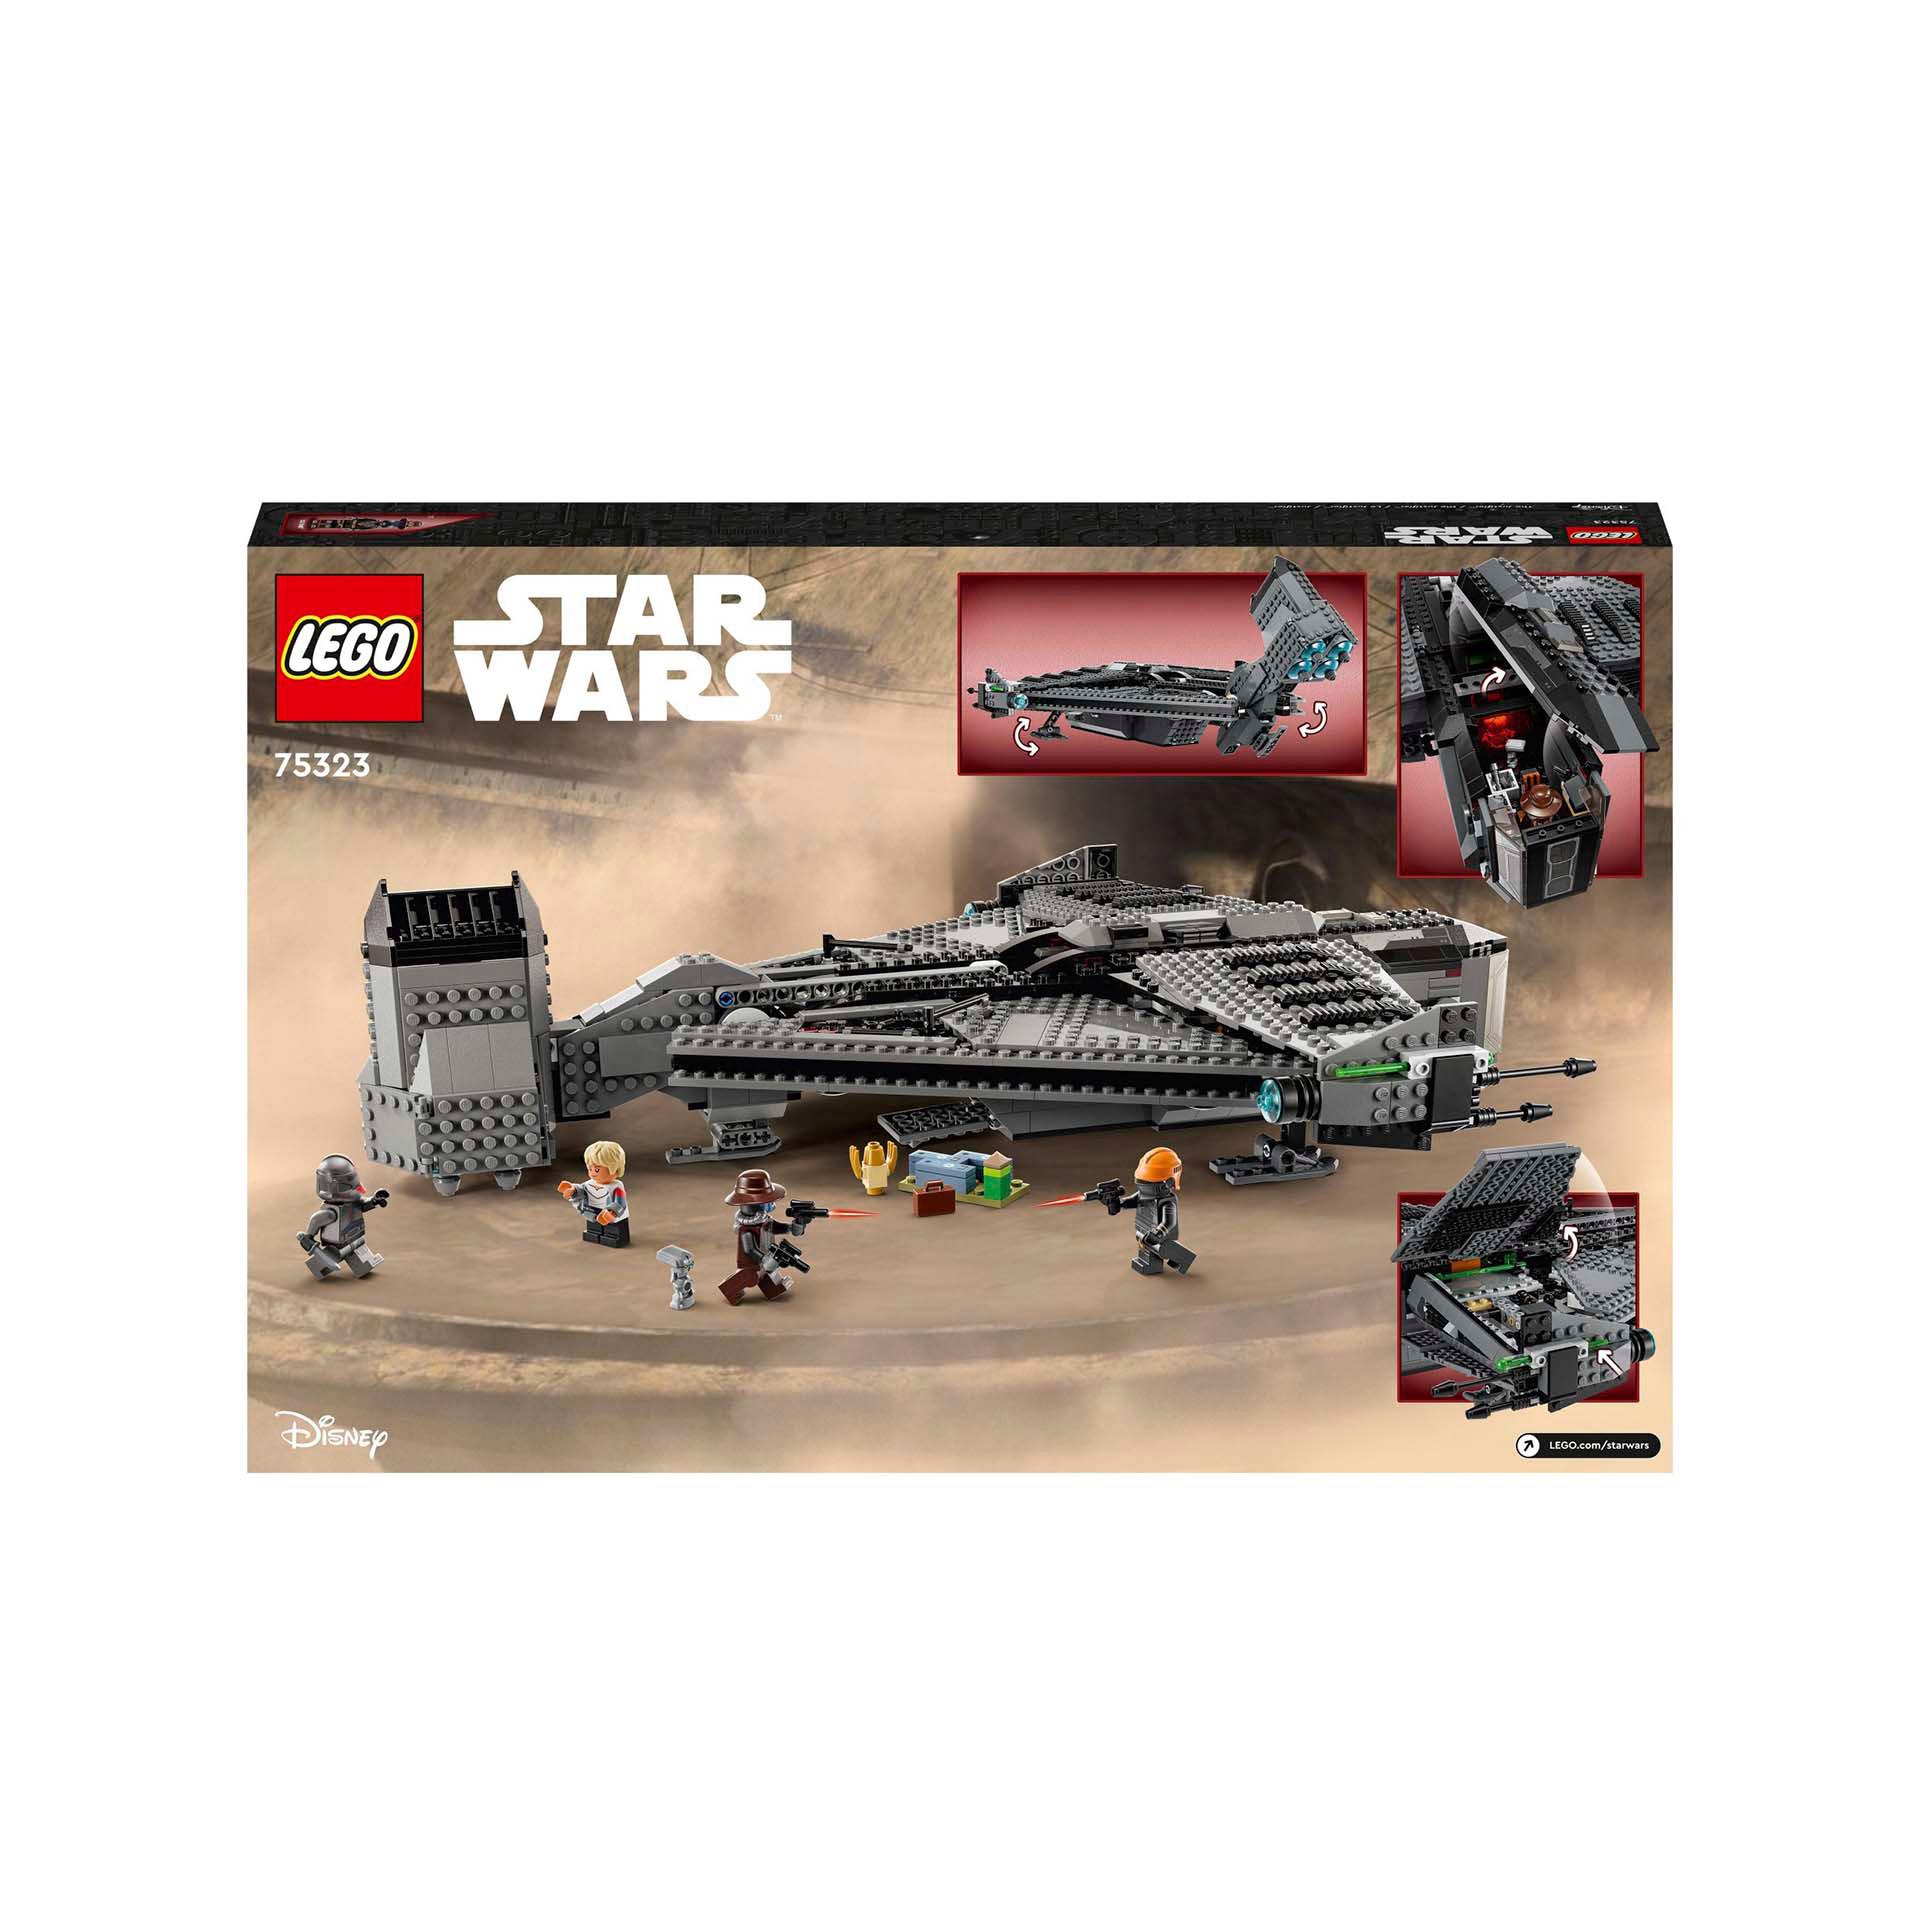 LEGO 75323 Star Wars The Justifier, Astronave Giocattolo da Costruire con Minifi 75323, , large